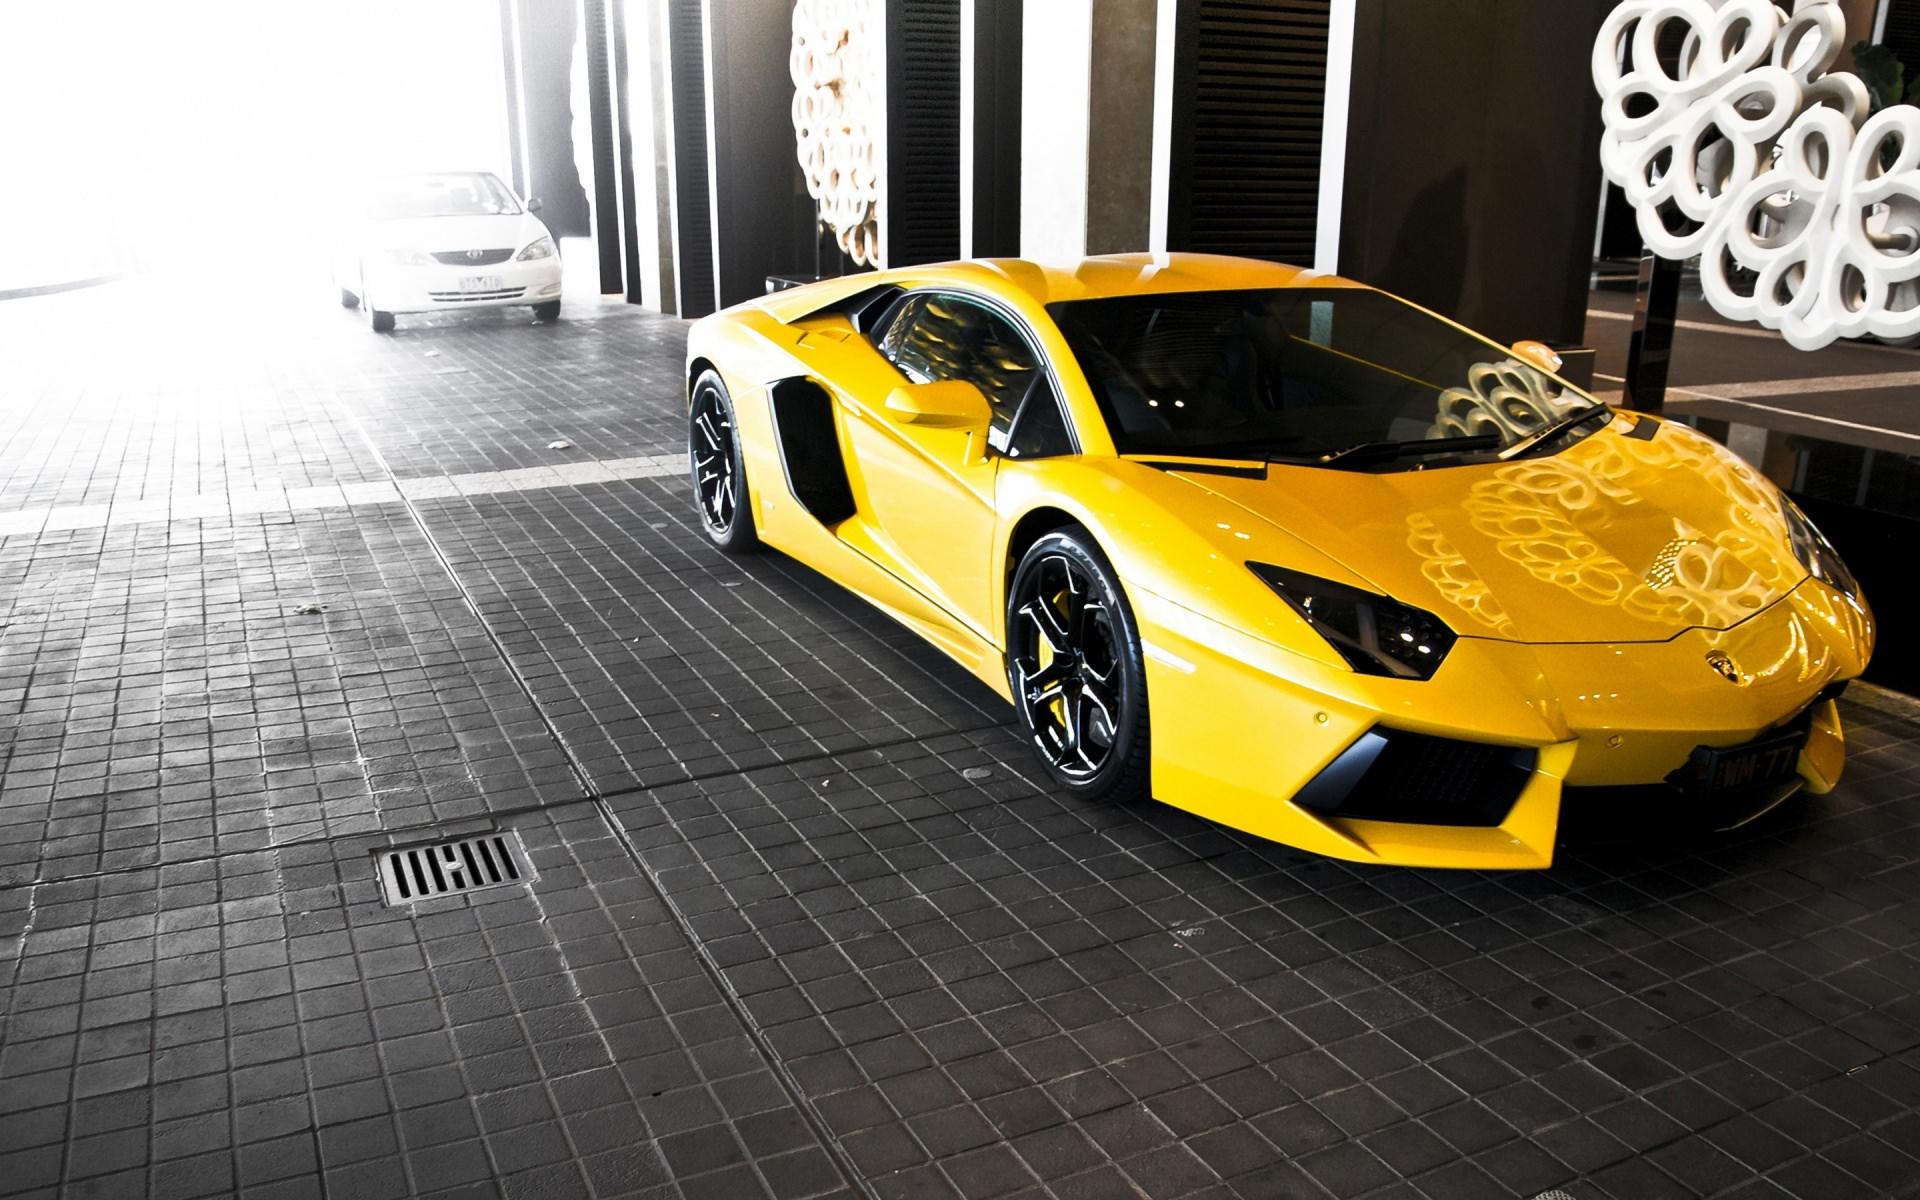 Yellow Lamborghini Wallpapers - Wallpaper Cave